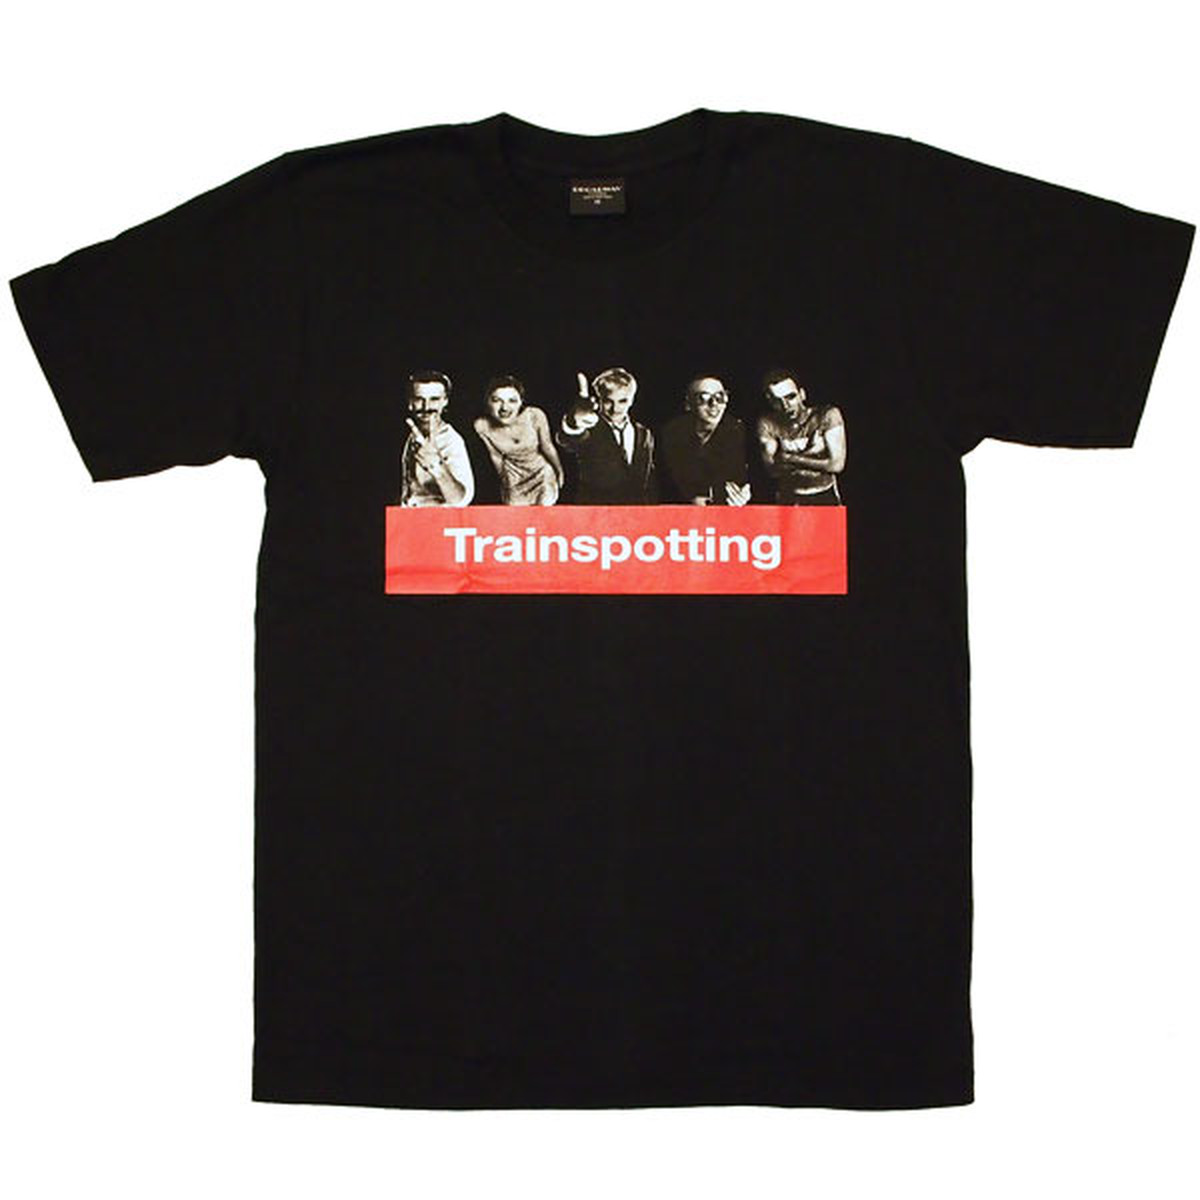 Trainspotting トレインスポッティング ブラック Tシャツ B056 Heatscry